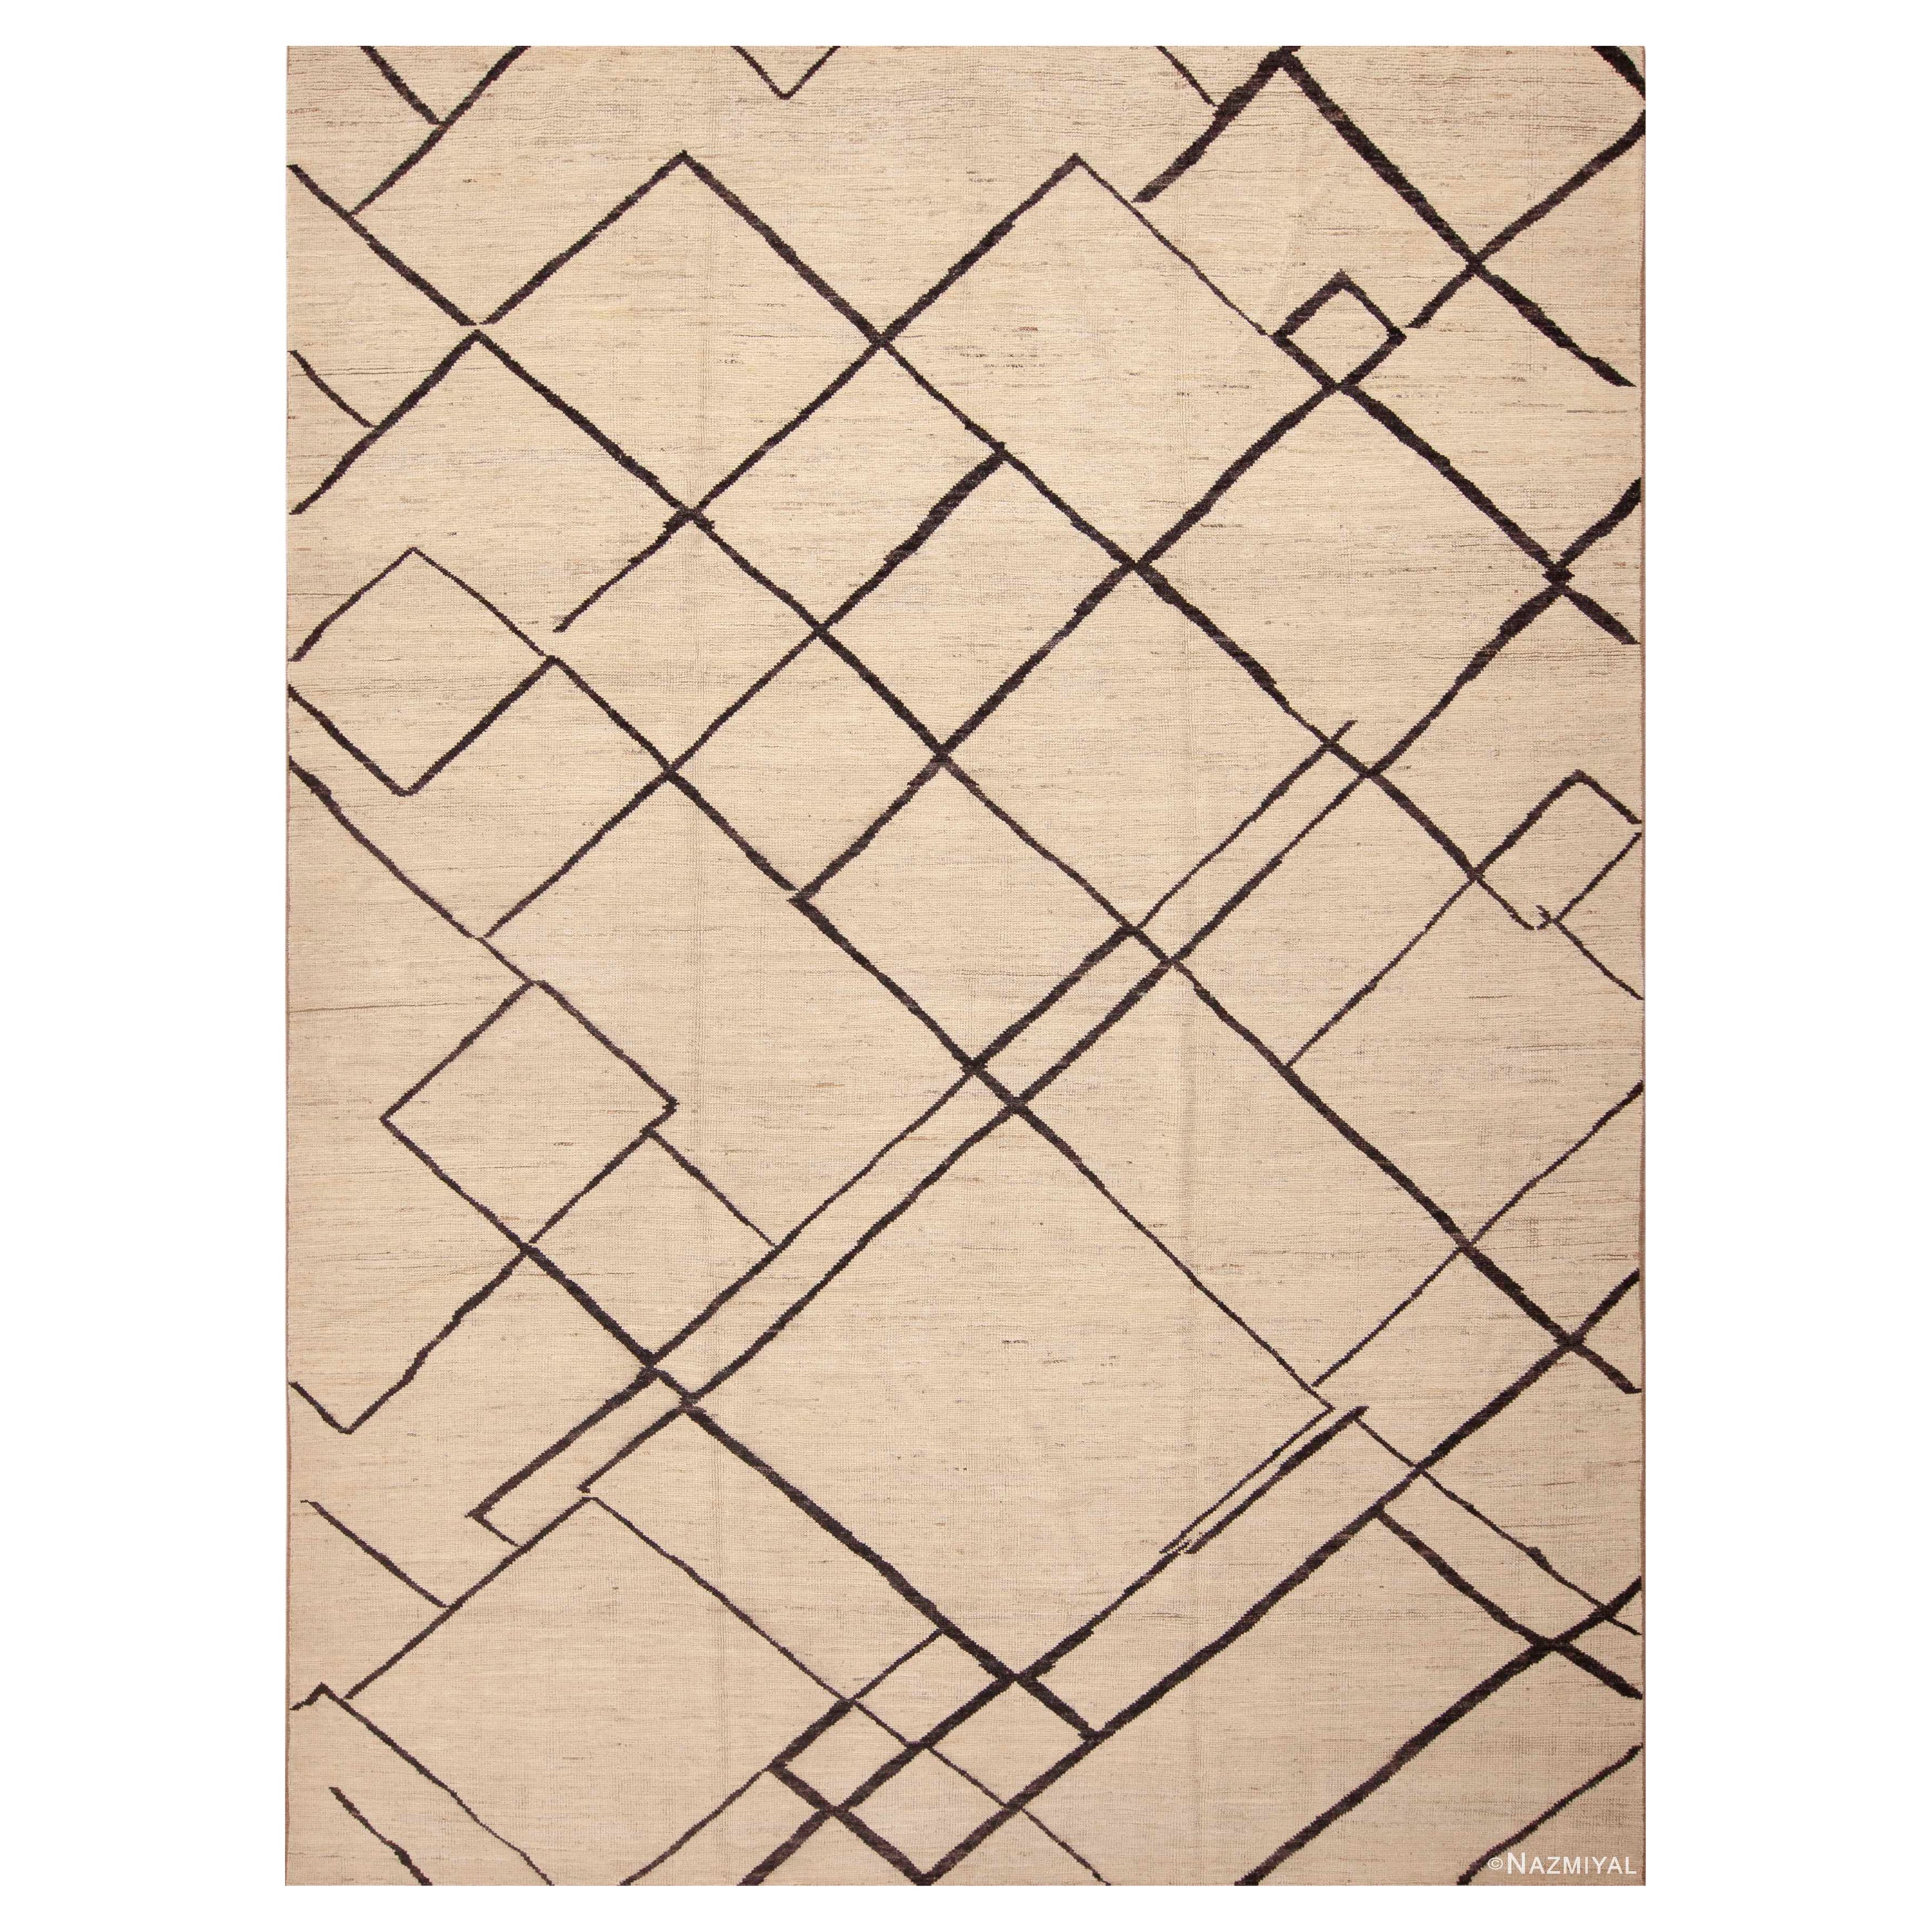 Nazmiyal Kollektion Moderner geometrischer Teppich in Zimmergröße 9'3" x 12'3" in geometrischem Design